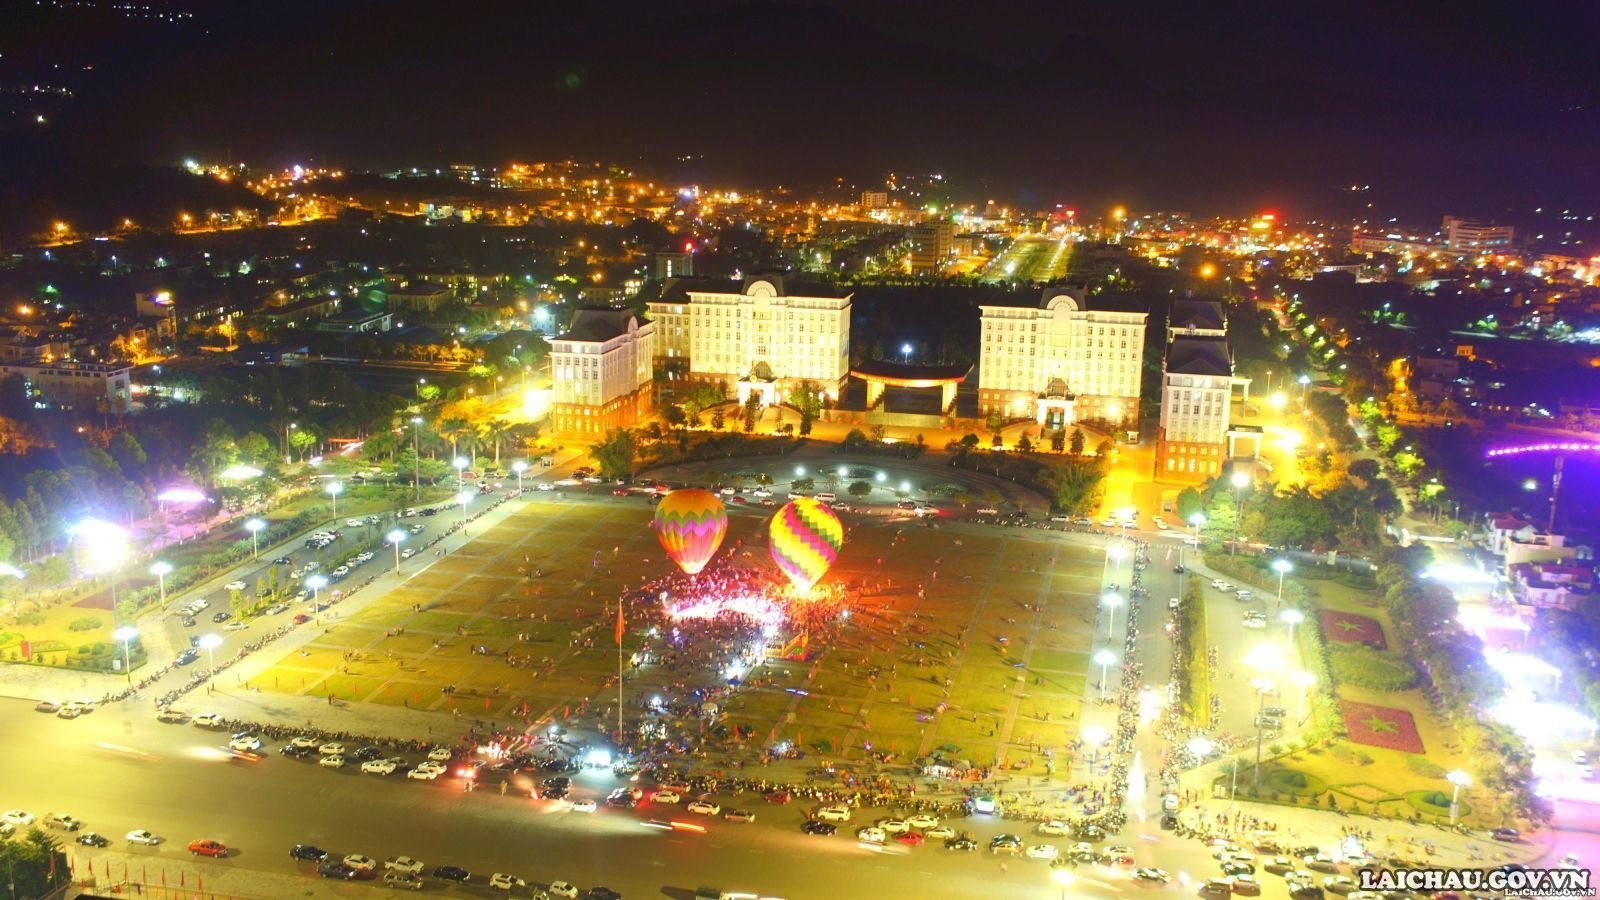 Quảng trường Nhân dân tỉnh Lai Châu là nơi diễn ra nhiều sự kiện chính trị, văn hoá quan trọng được đông đảo Nhân dân đến xem. (Ảnh: Đặng Hưng)